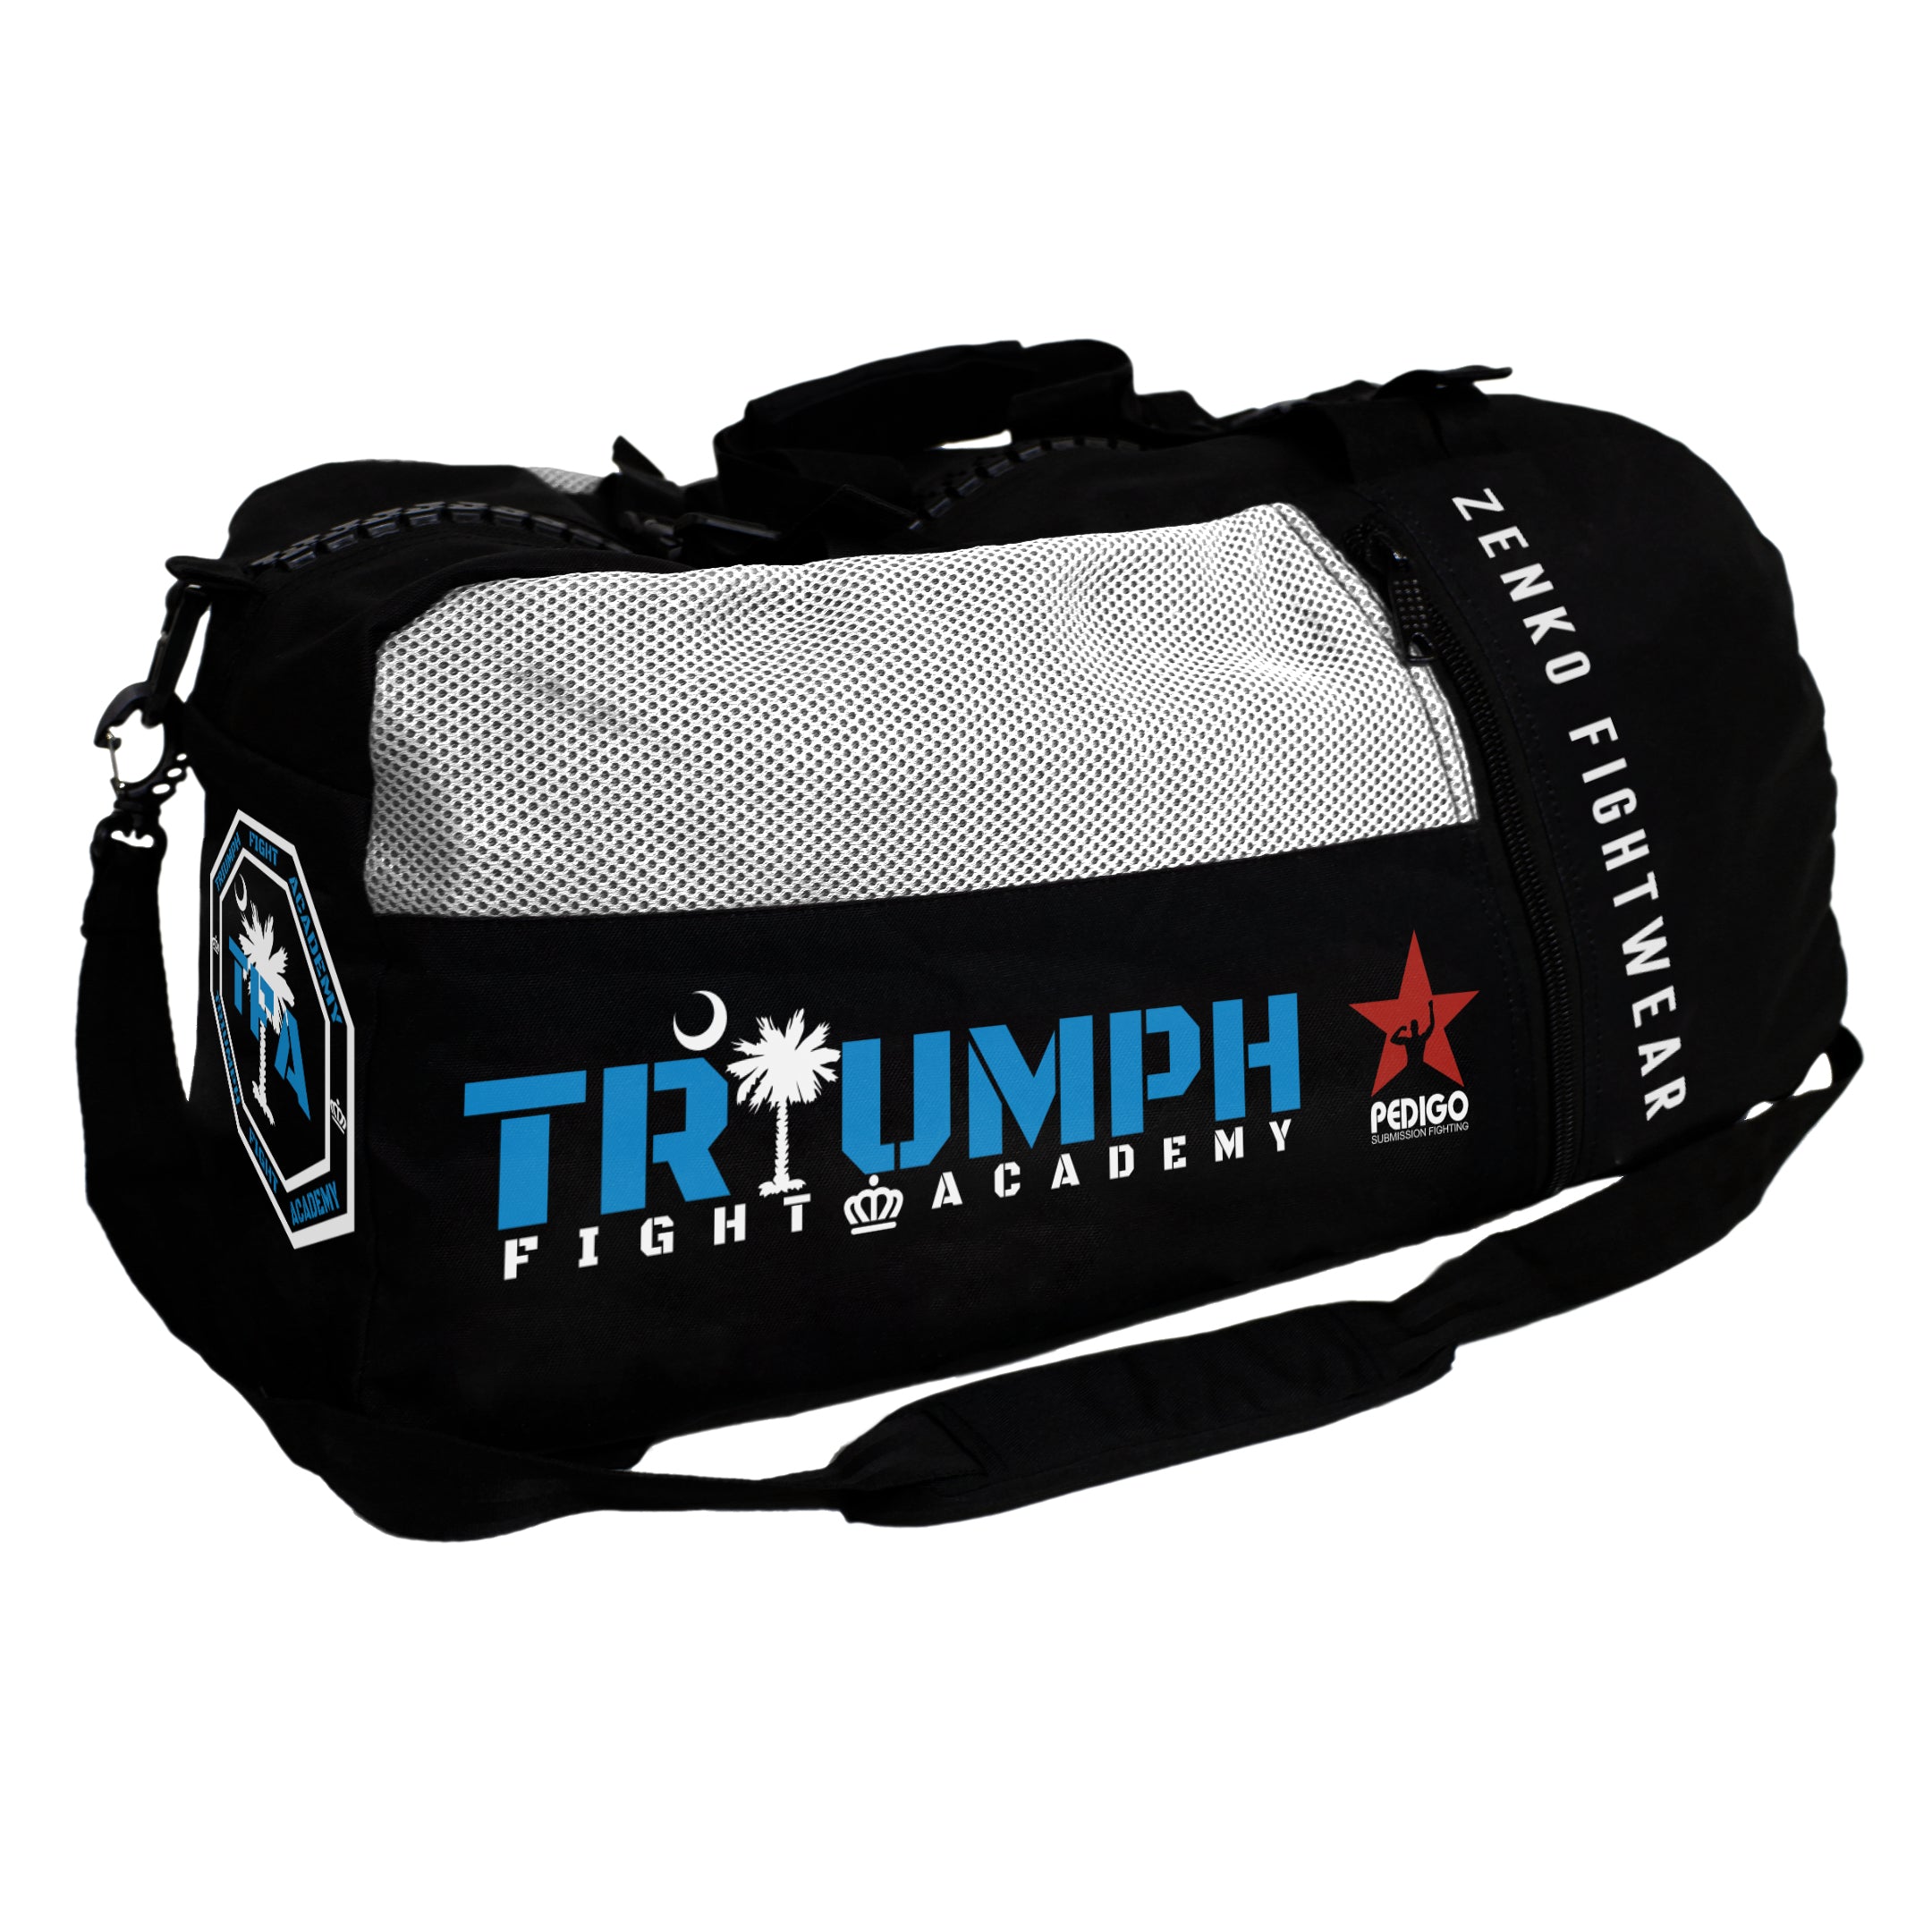 Triumph Fight Academy Gear Bag - Zenko Fightwear